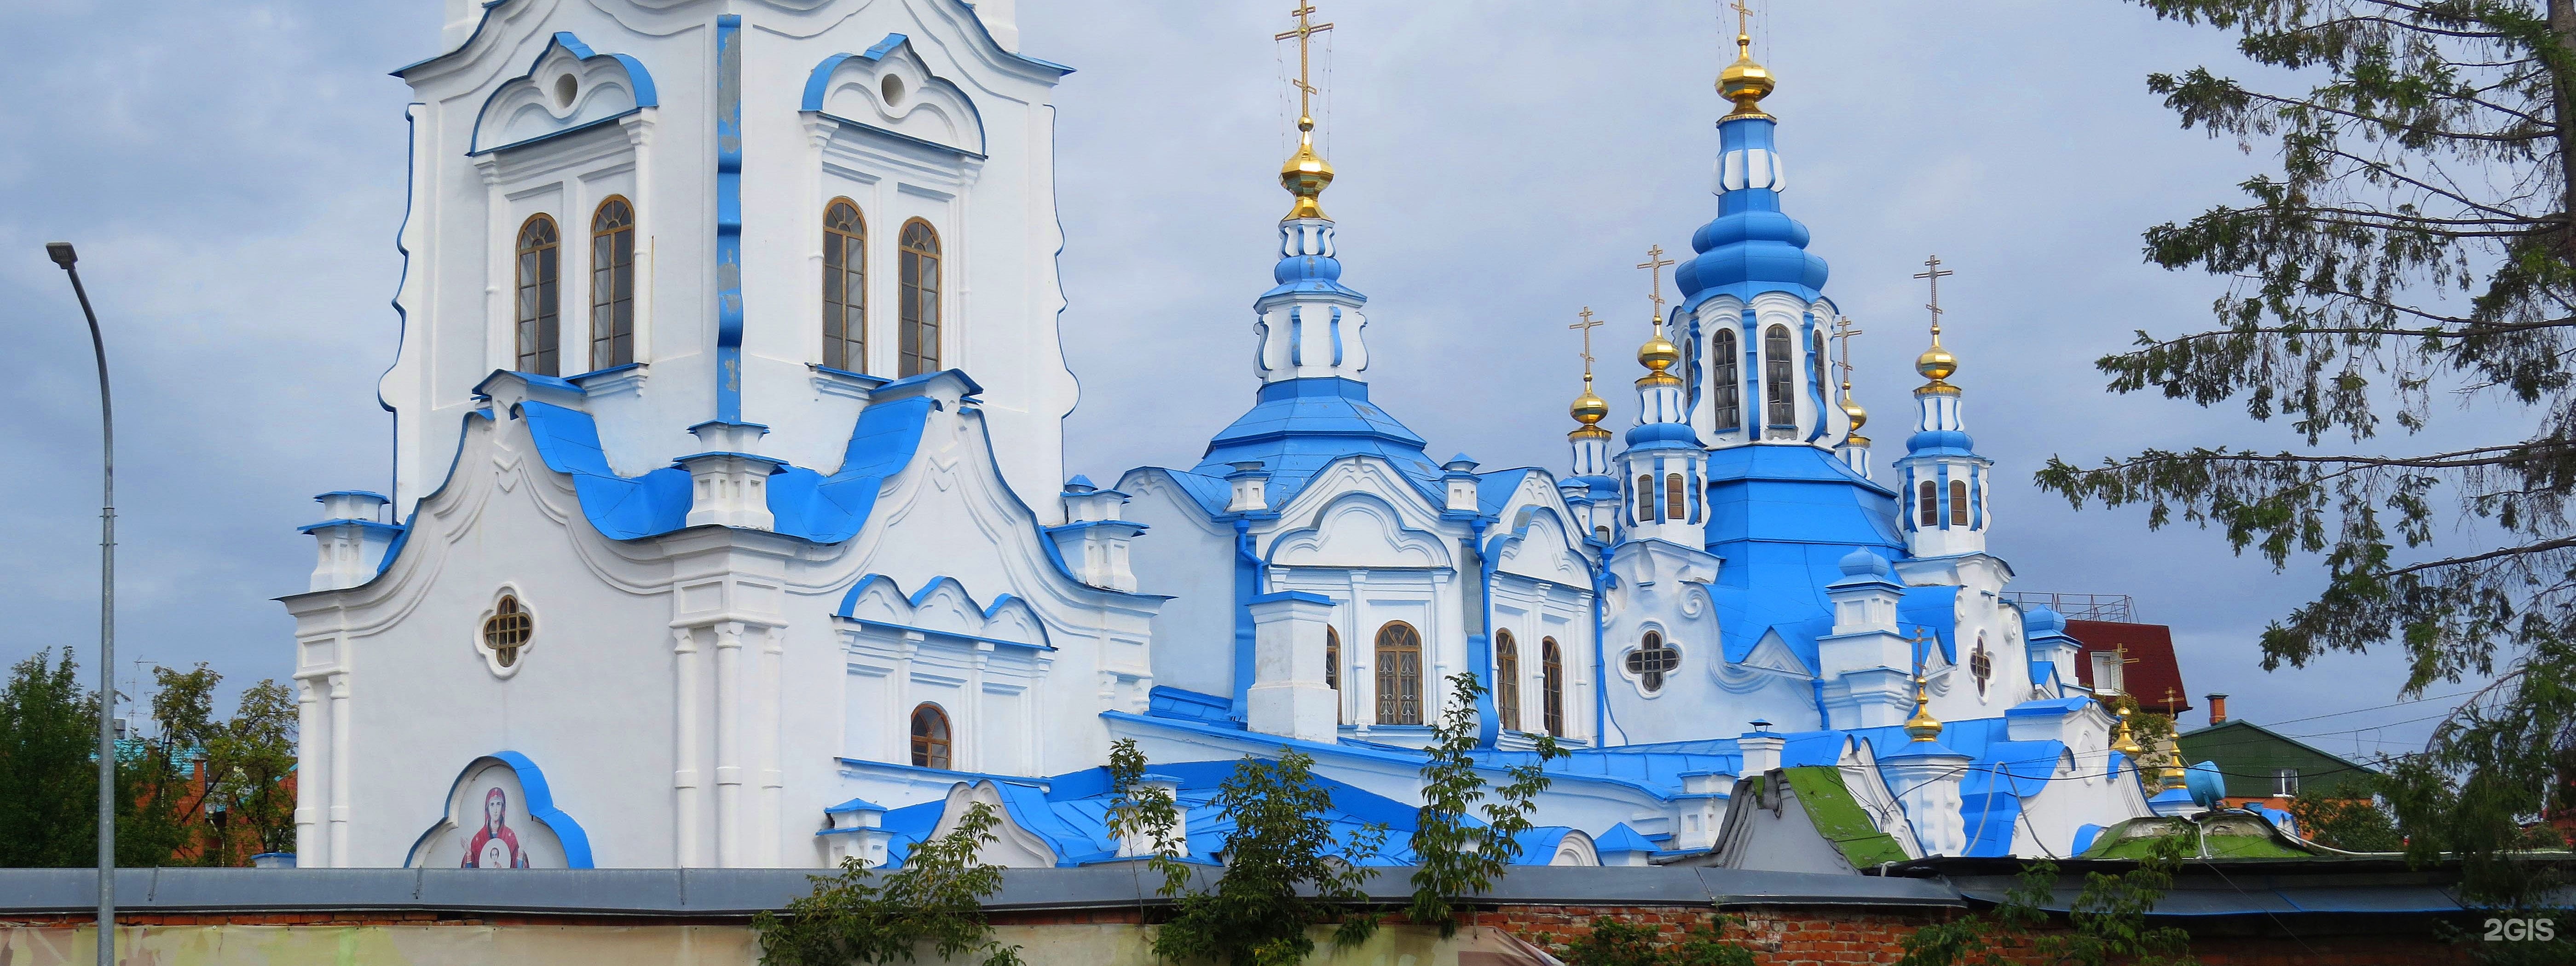 Знаменский кафедральный собор Тюмень до реставрации